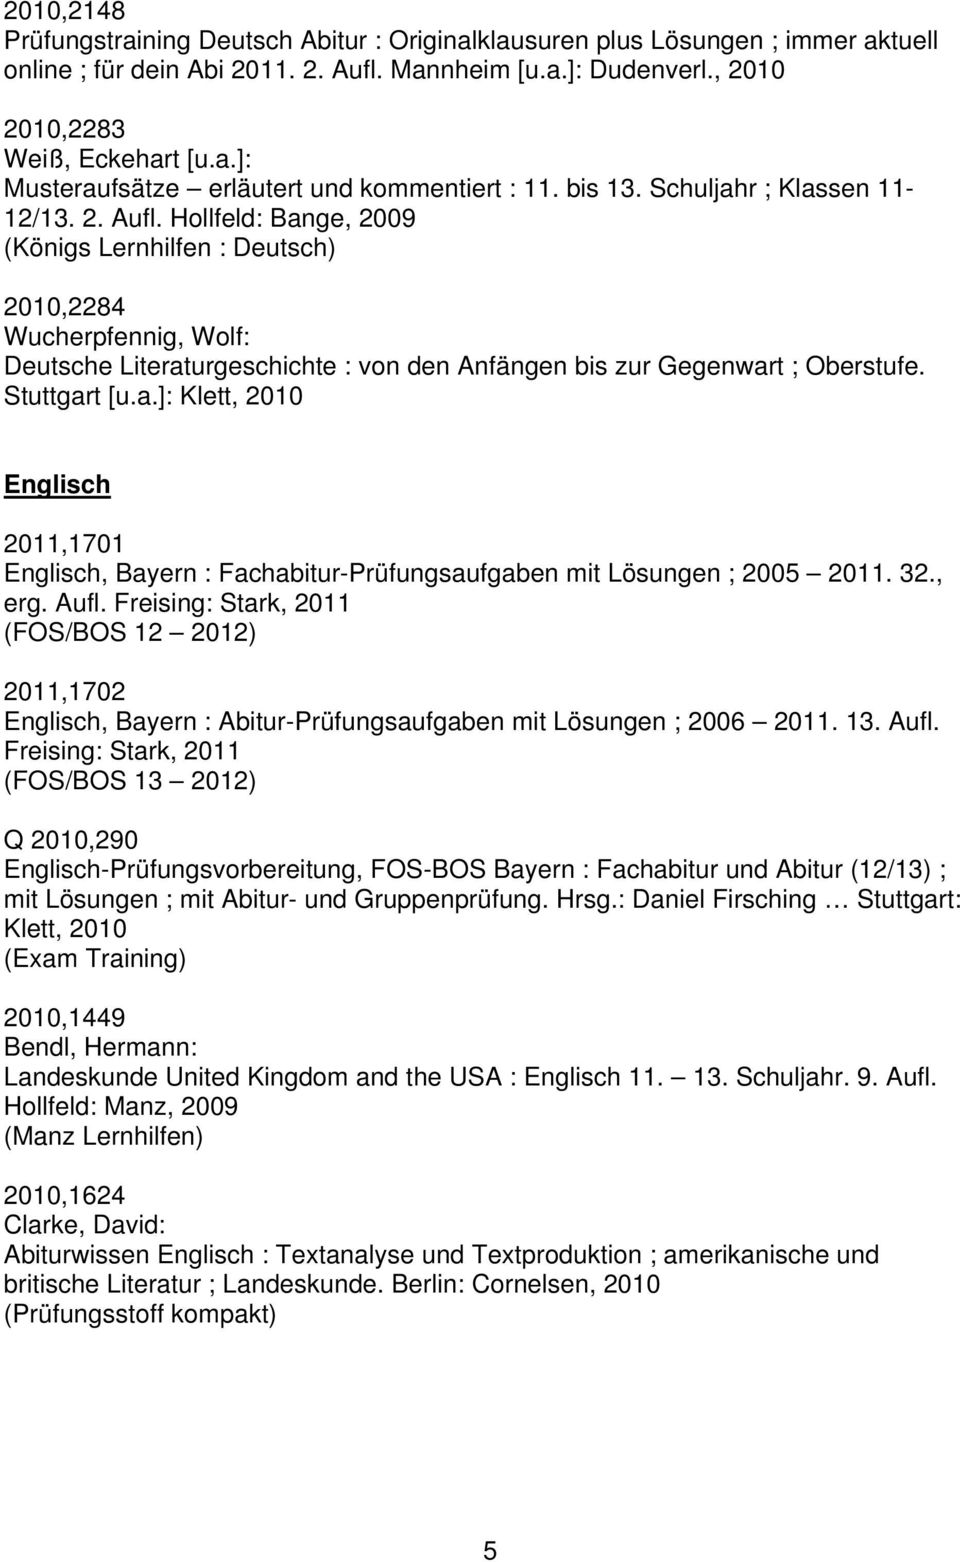 Hollfeld: Bange, 2009 (Königs Lernhilfen : Deutsch) 2010,2284 Wucherpfennig, Wolf: Deutsche Literaturgeschichte : von den Anfängen bis zur Gegenwart ; Oberstufe. Stuttgart [u.a.]: Klett, 2010 Englisch 2011,1701 Englisch, Bayern : Fachabitur-Prüfungsaufgaben mit Lösungen ; 2005 2011.